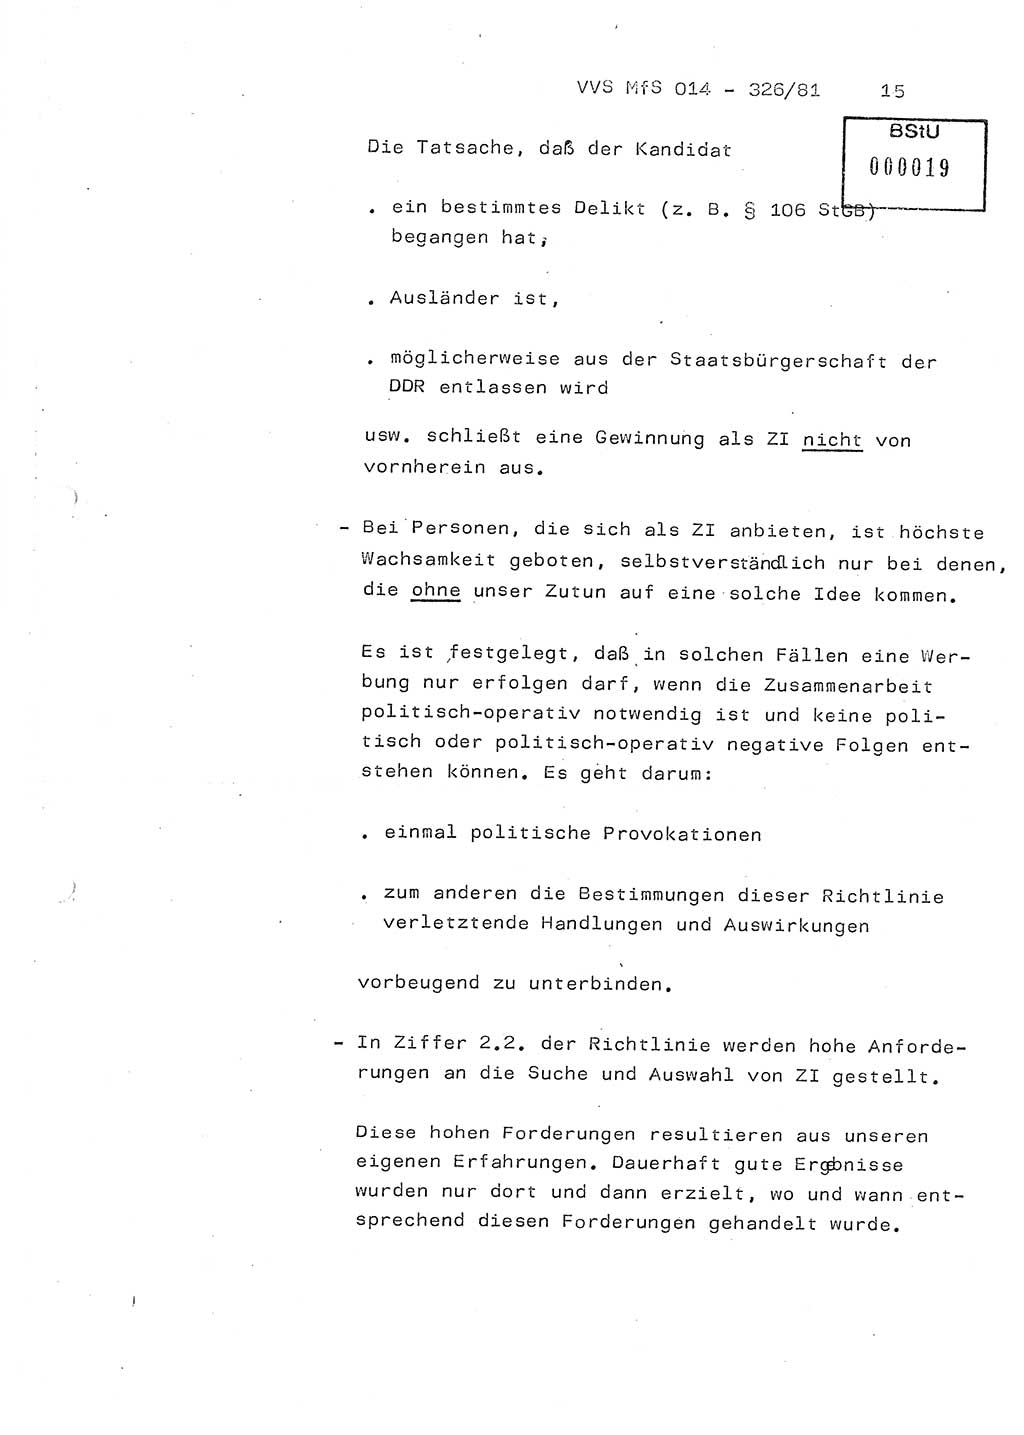 Thesen zum Einführungsvortrag für die Schulung zur Richtlinie Nr. 2/81 [zur Arbeit mit Zelleninformatoren (ZI)] des Genossen Minister (Generaloberst Erich Mielke), Ministerium für Staatssicherheit (MfS) [Deutsche Demokratische Republik (DDR)], Hauptabteilung (HA) Ⅸ, Vertrauliche Verschlußsache (VVS) 014-326/81, Berlin 1981, Seite 15 (Th. Sch. RL 2/81 MfS DDR HA Ⅸ VVS 014-326/81 1981, S. 15)